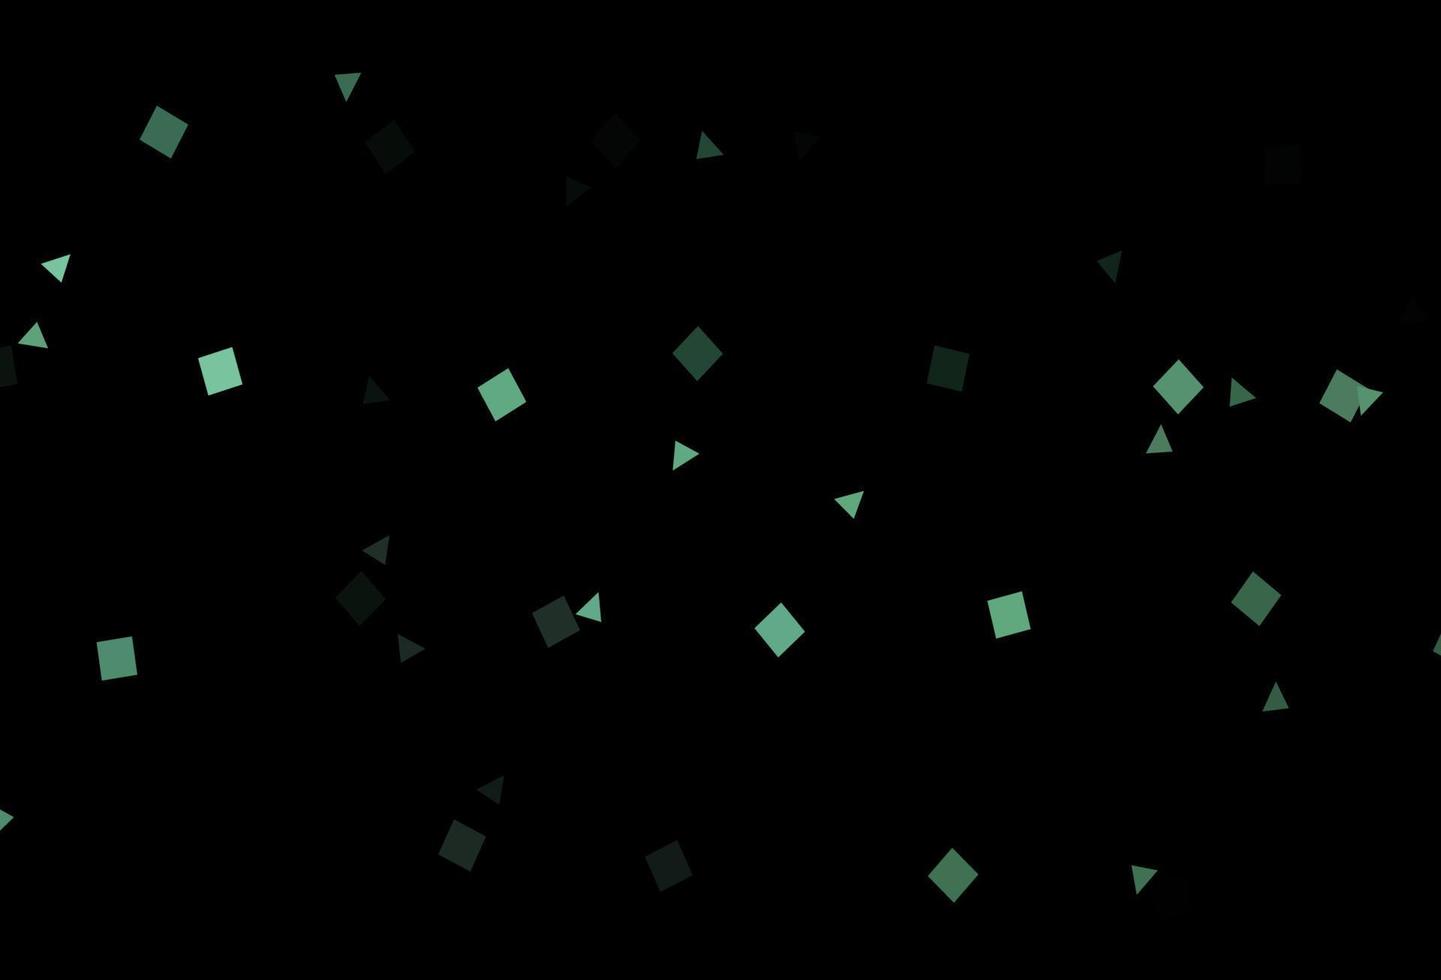 modello vettoriale nero scuro in stile poligonale con cerchi.